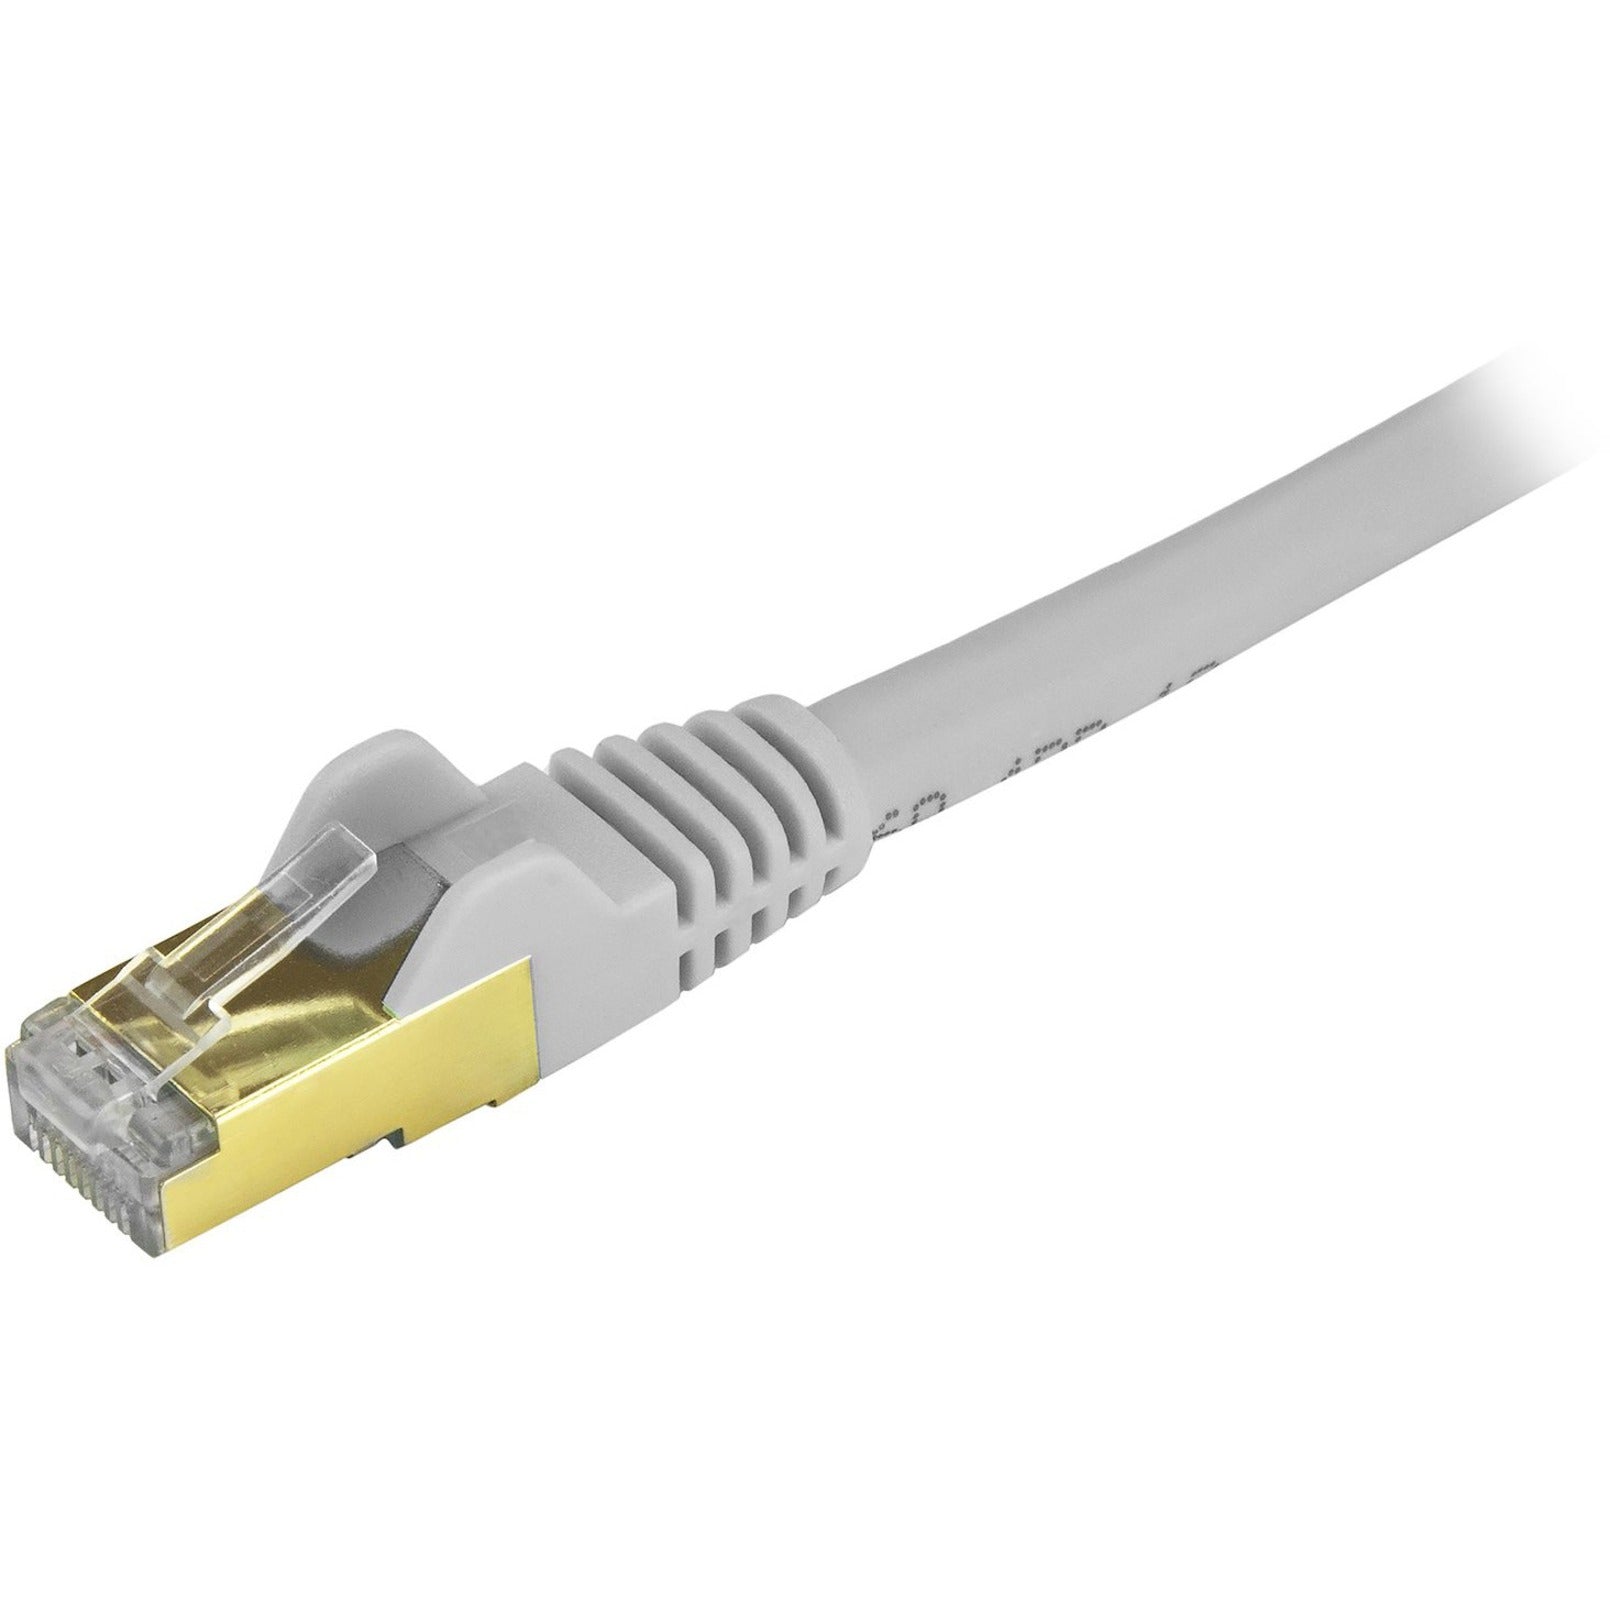 StarTech.com C6ASPAT30GR Cat6a Ethernet Patch Cable - Shielded (STP) - 30 ft. Gray Long Ethernet Cord  StarTech.com C6ASPAT30GR Cordon de patch Ethernet Cat6a - Blindé (STP)  - 30 pi. Gris Câble Ethernet long